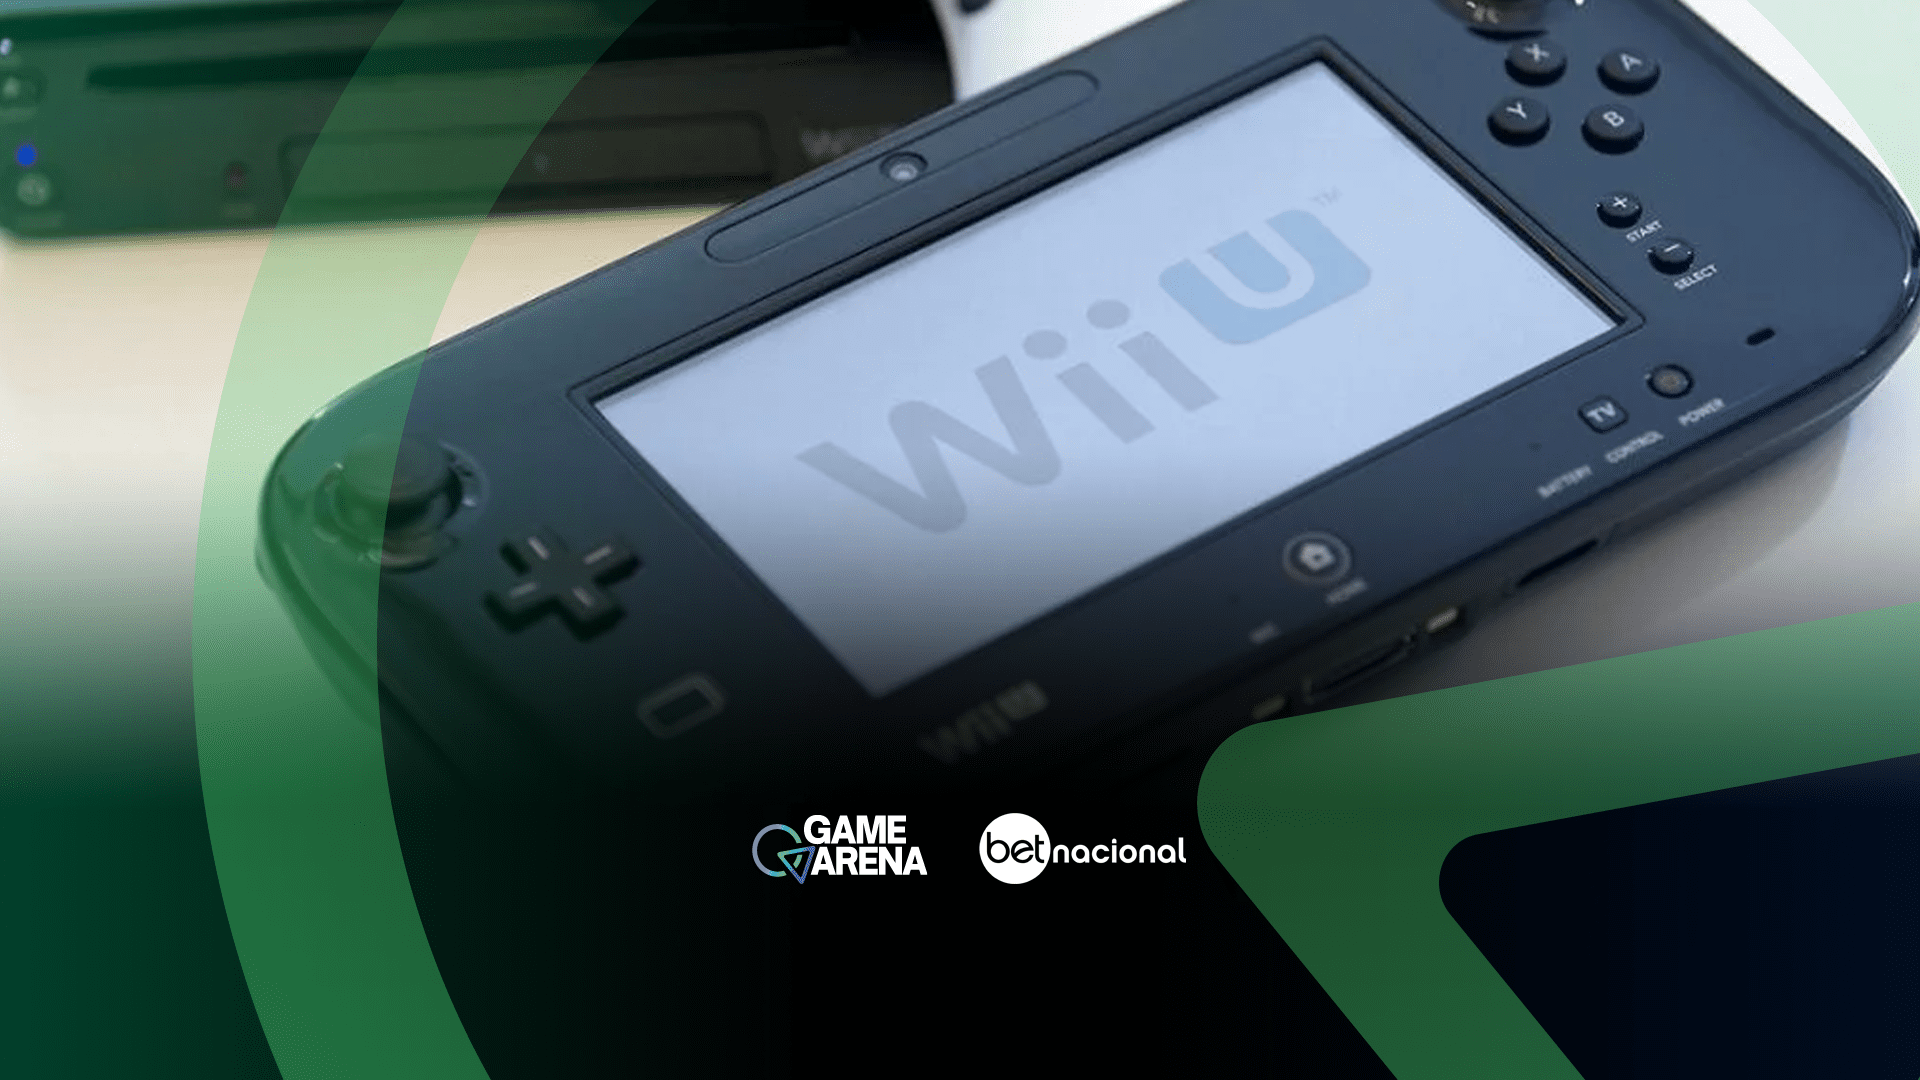 Nintendo 3DS: portátil clássico é descontinuado após 10 anos do lançamento